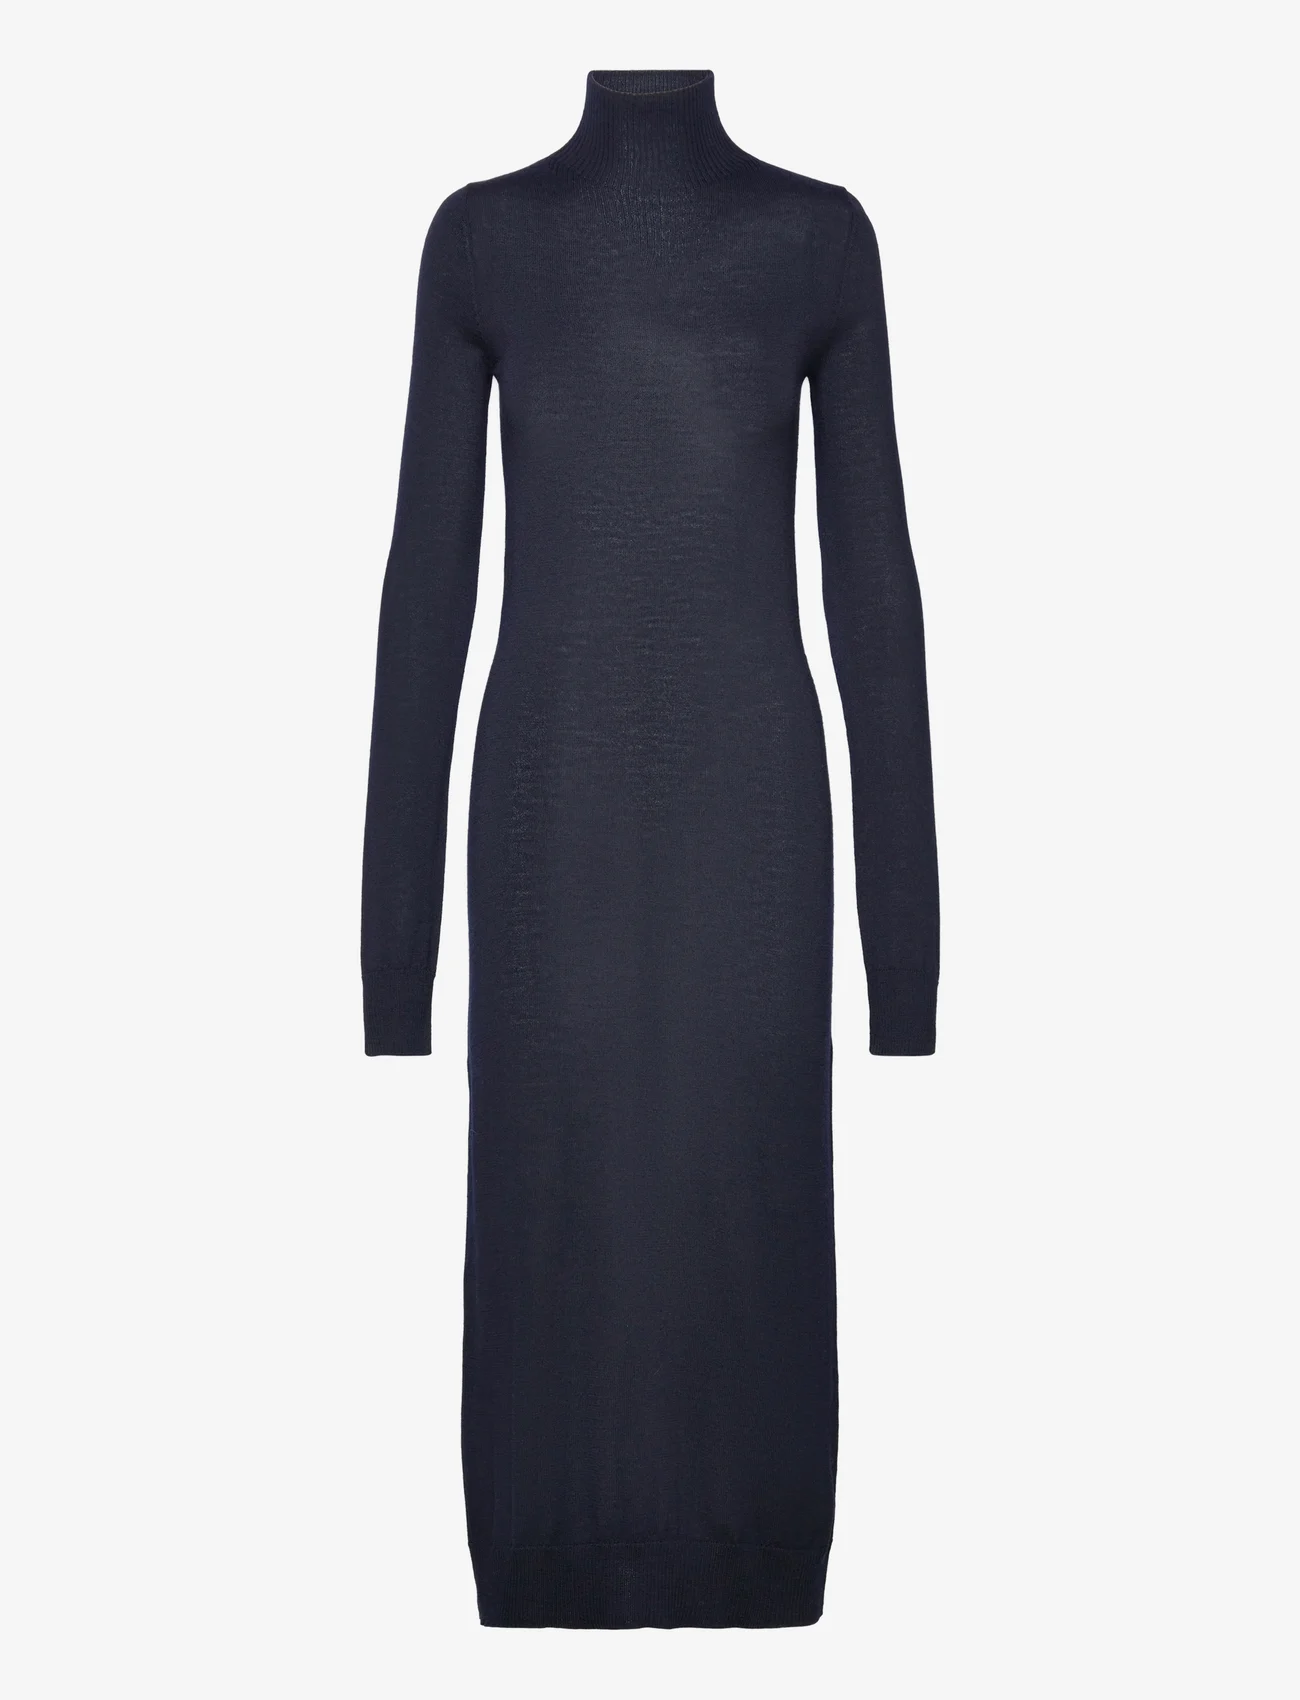 Filippa K - Knit Turtleneck Dress - tettsittende kjoler - navy - 0